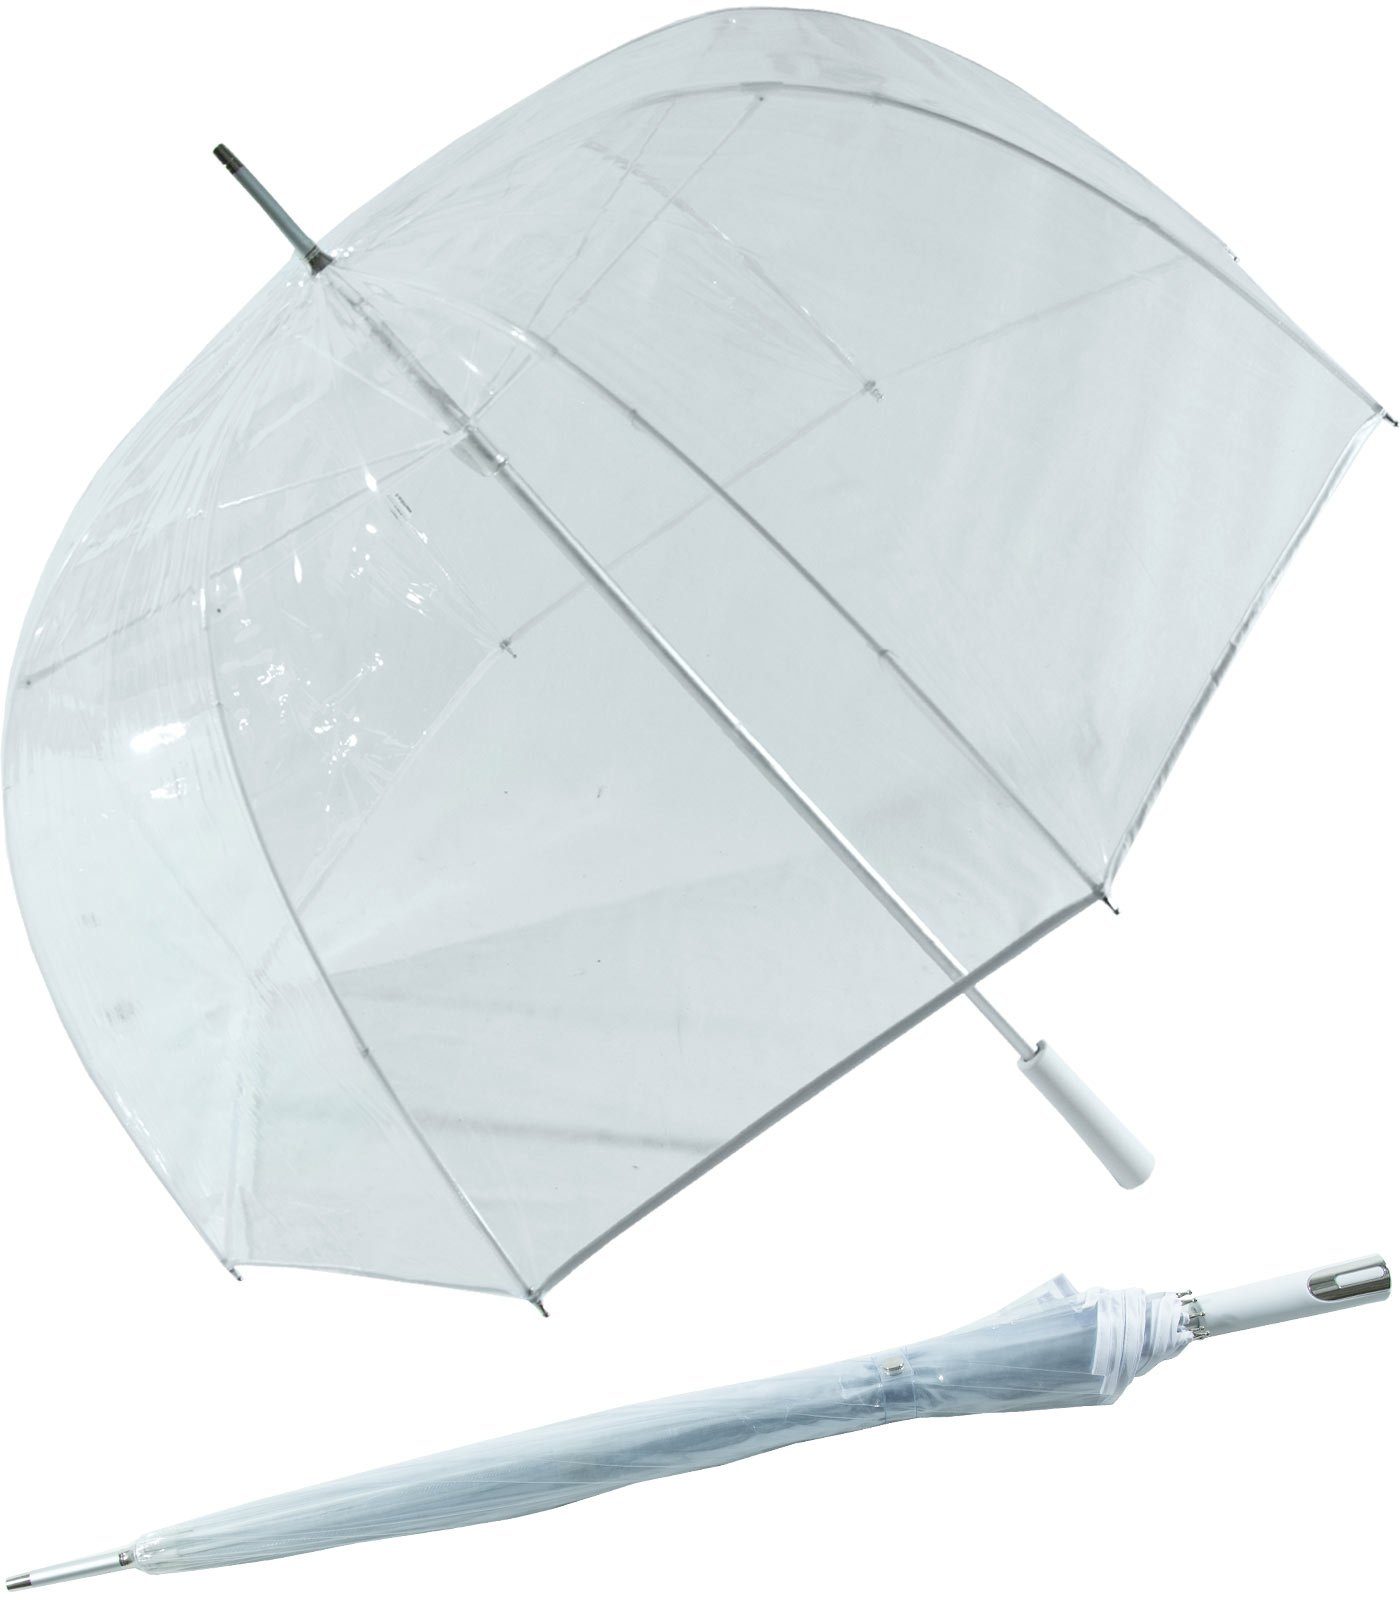 Impliva Langregenschirm Falcone® XL Glockenschirm durchsichtig transparent, durchsichtig weiß